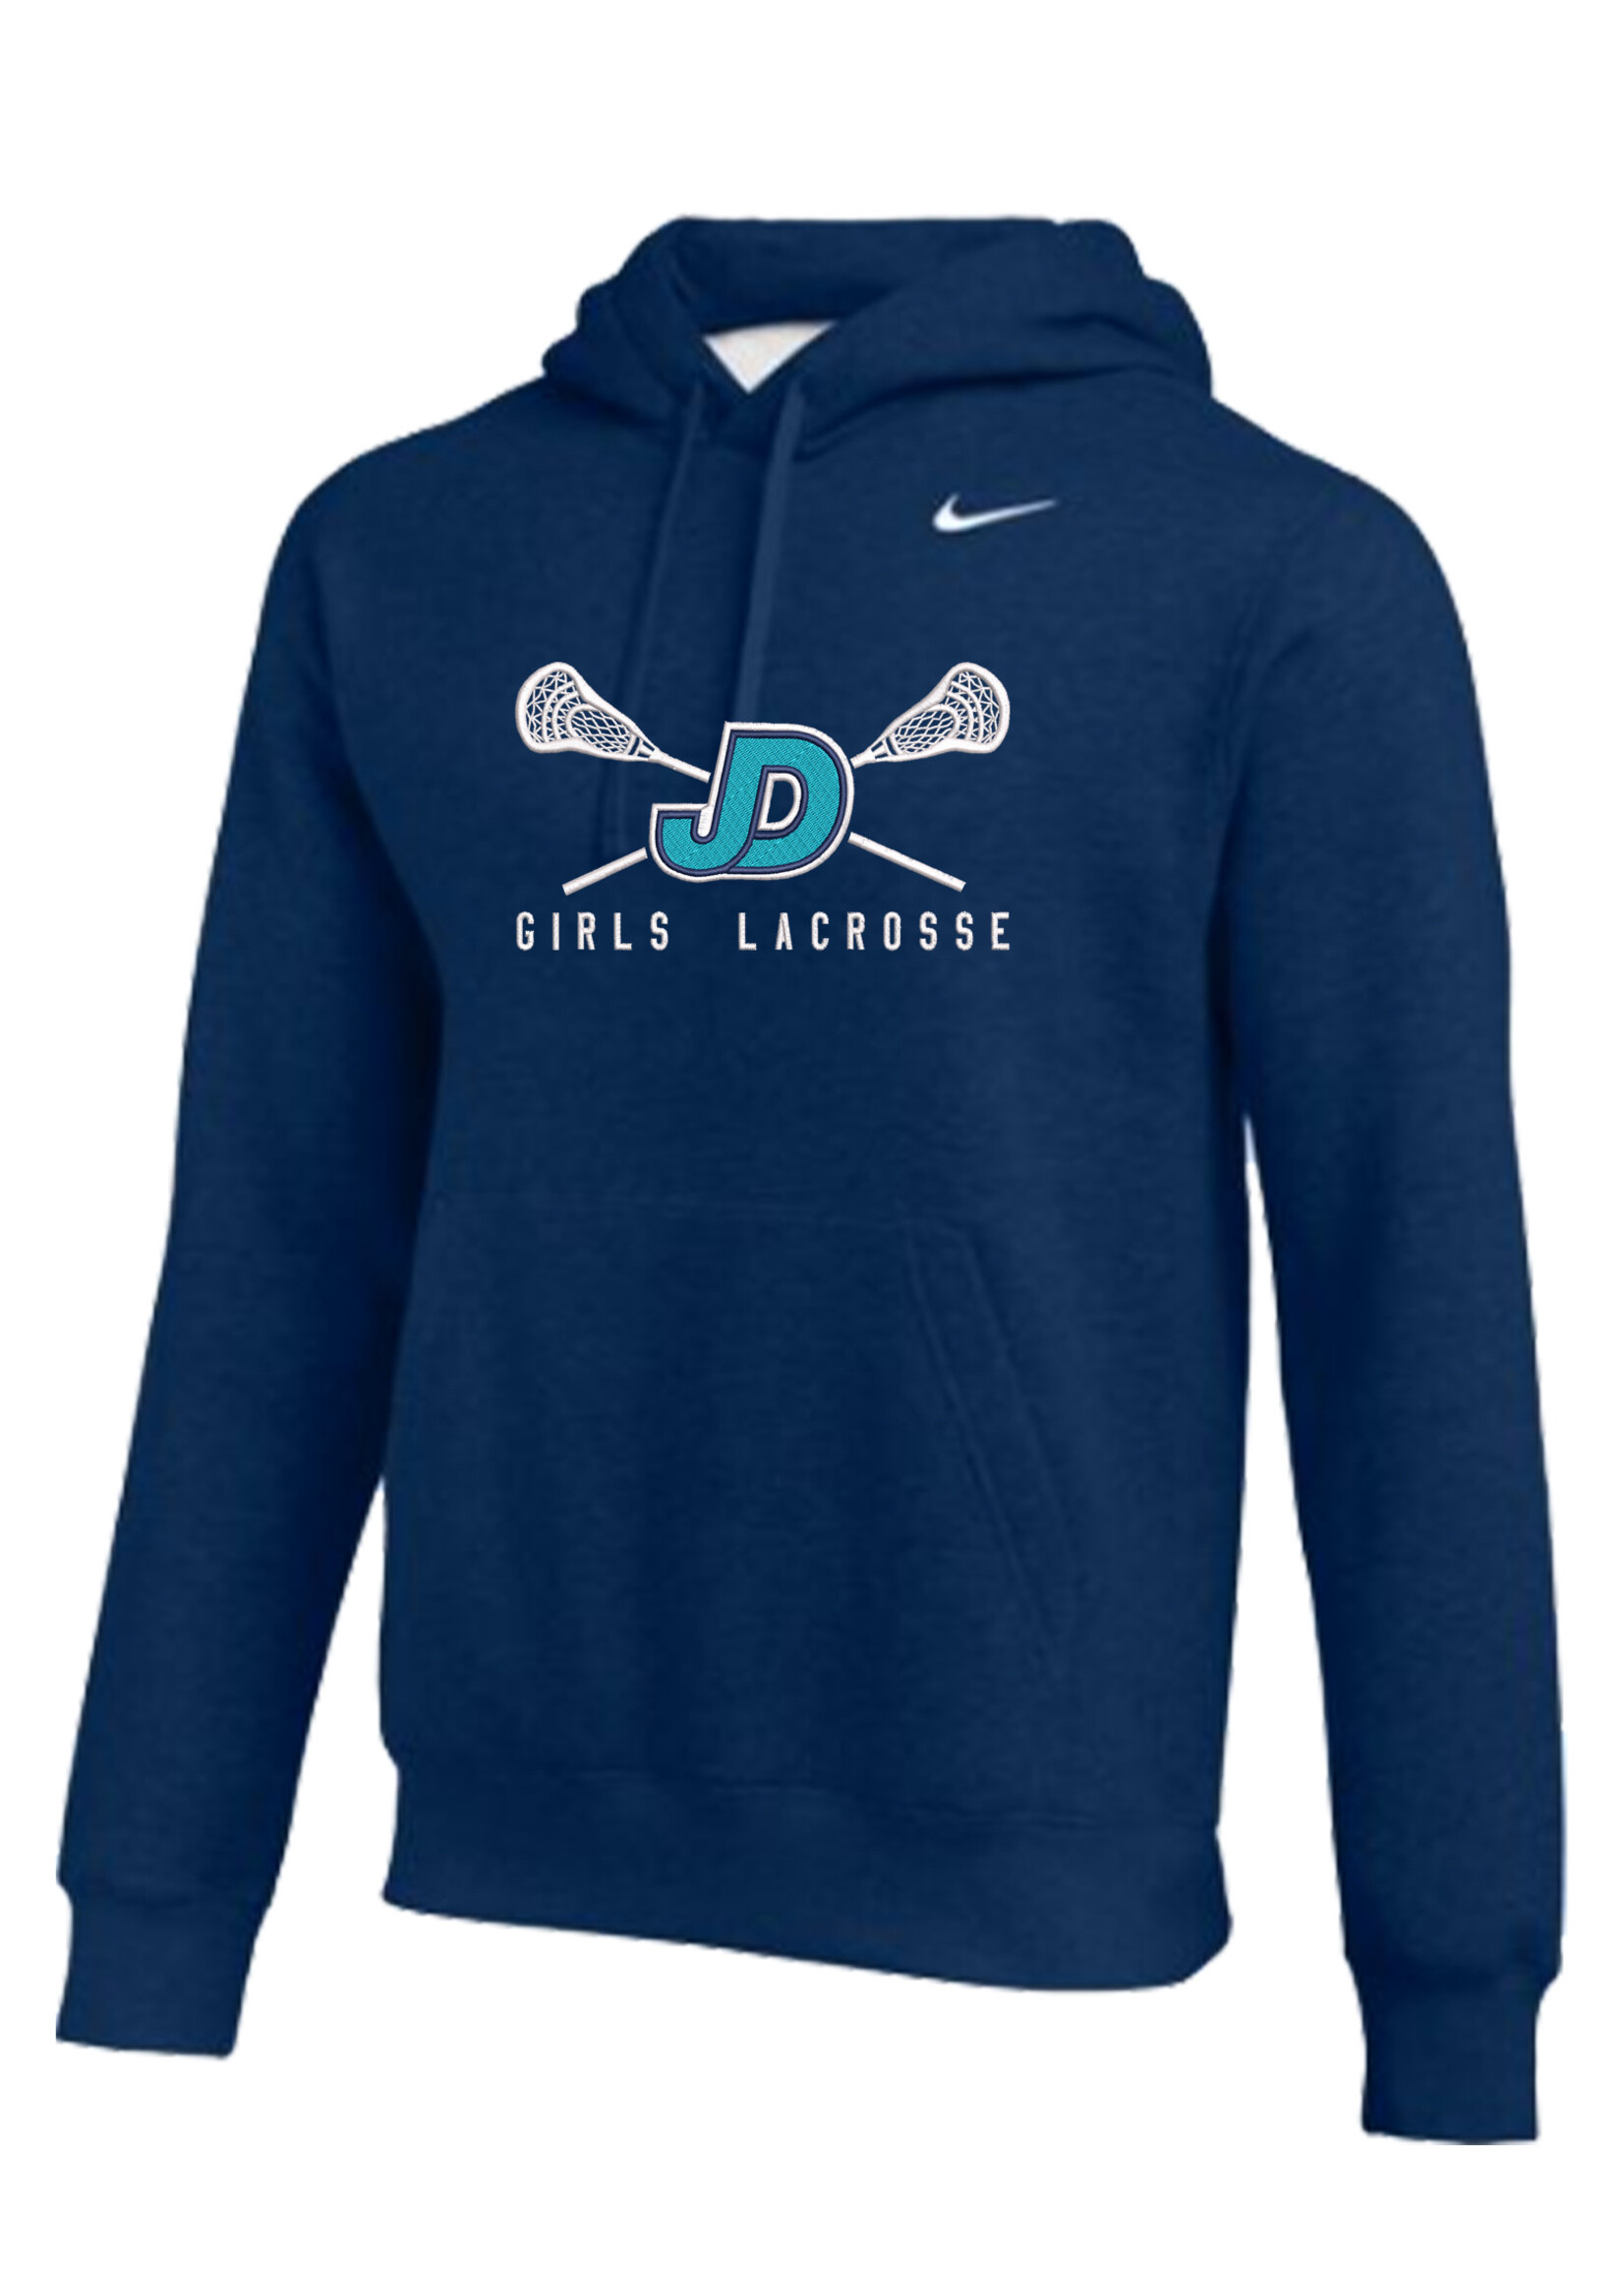 NON-UNIFORM Lacrosse - JD Girls Lacrosse Sticks Embr. Nike Hooded Sweatshirt, Unisex